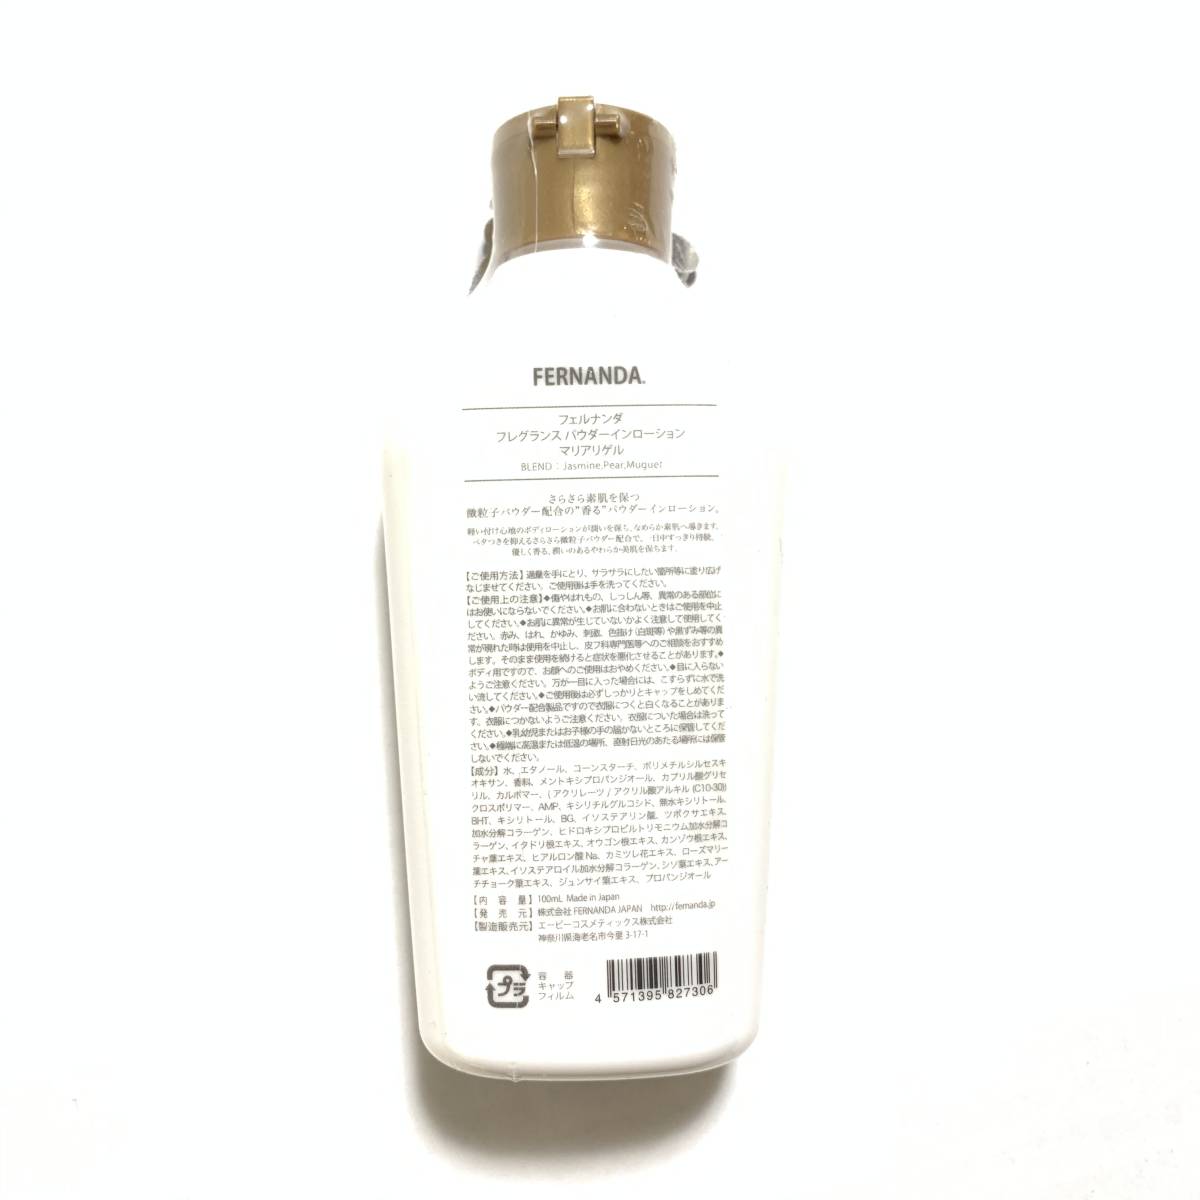  new goods limitation *FERNANDA (feru naan da) fragrance powder in lotion Mali have gel ( body lotion )*